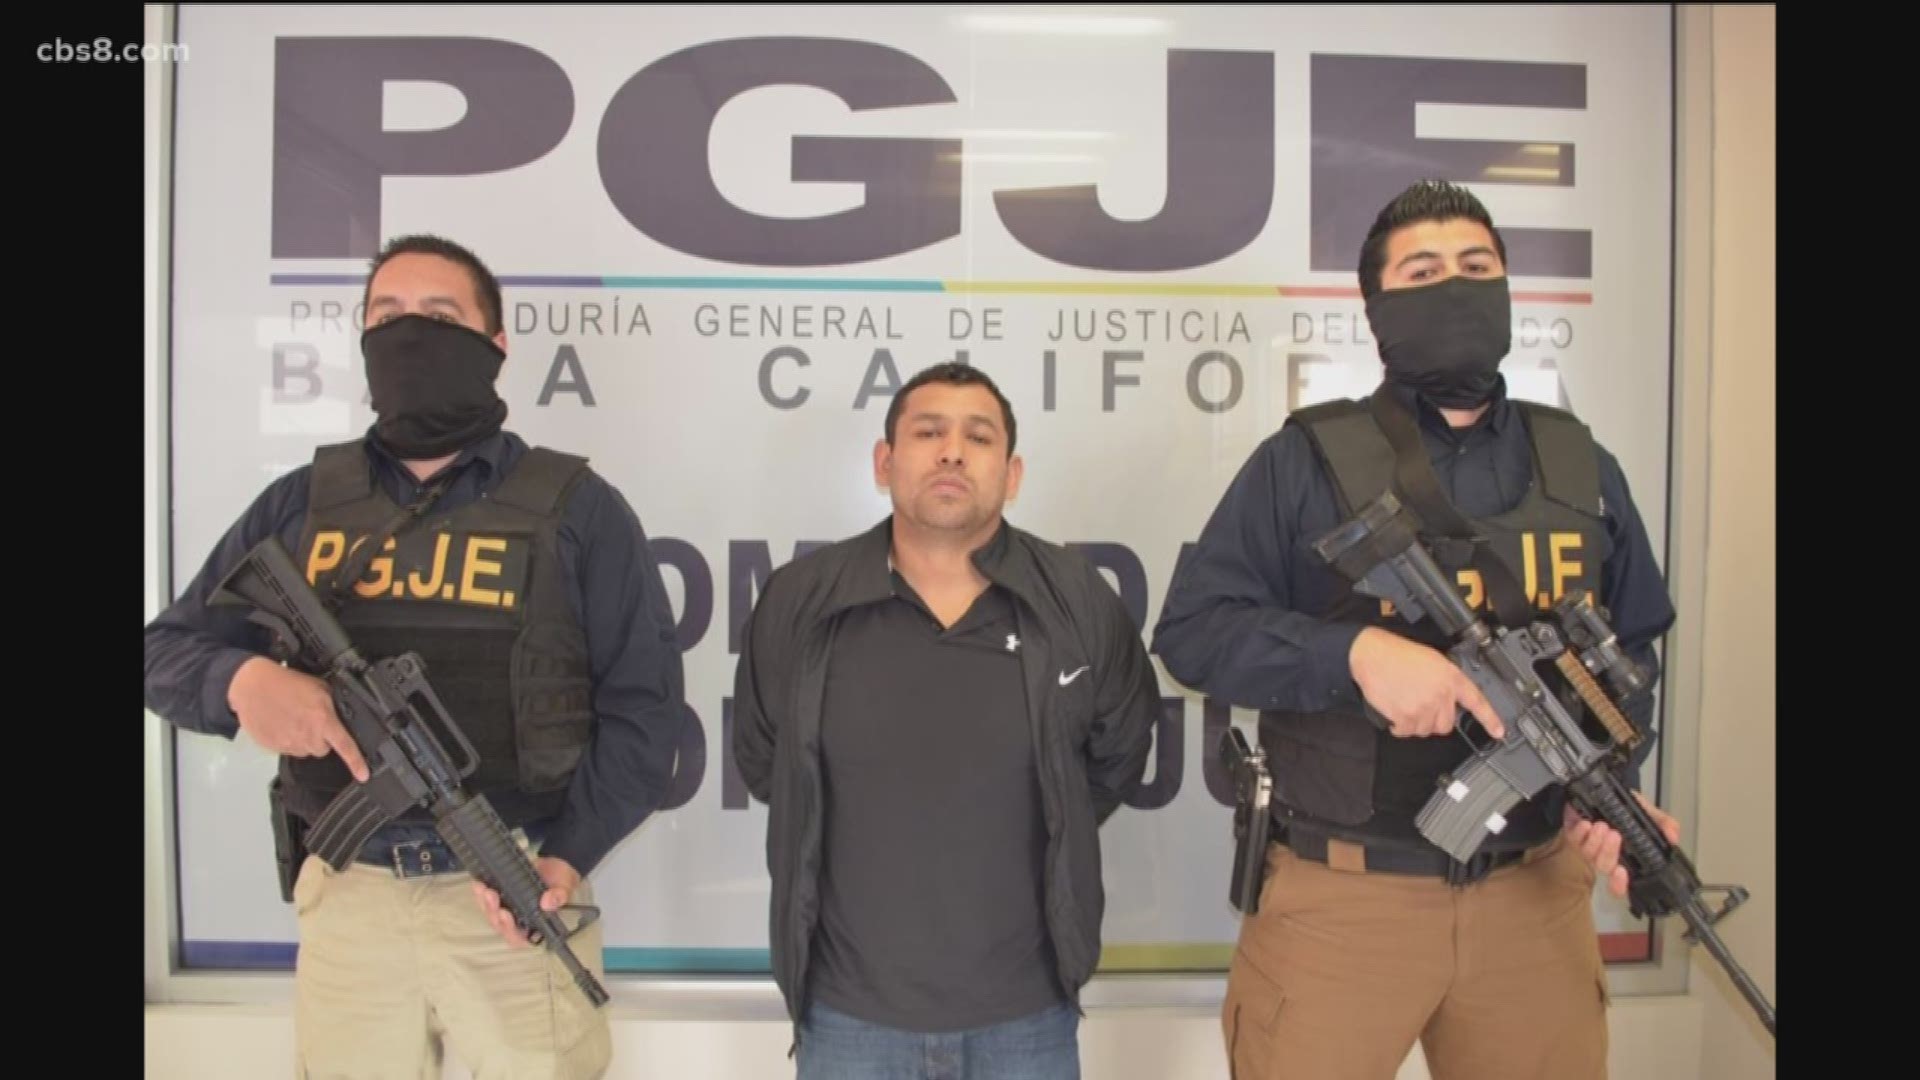 Major drug cartel figure captured in Tijuana.